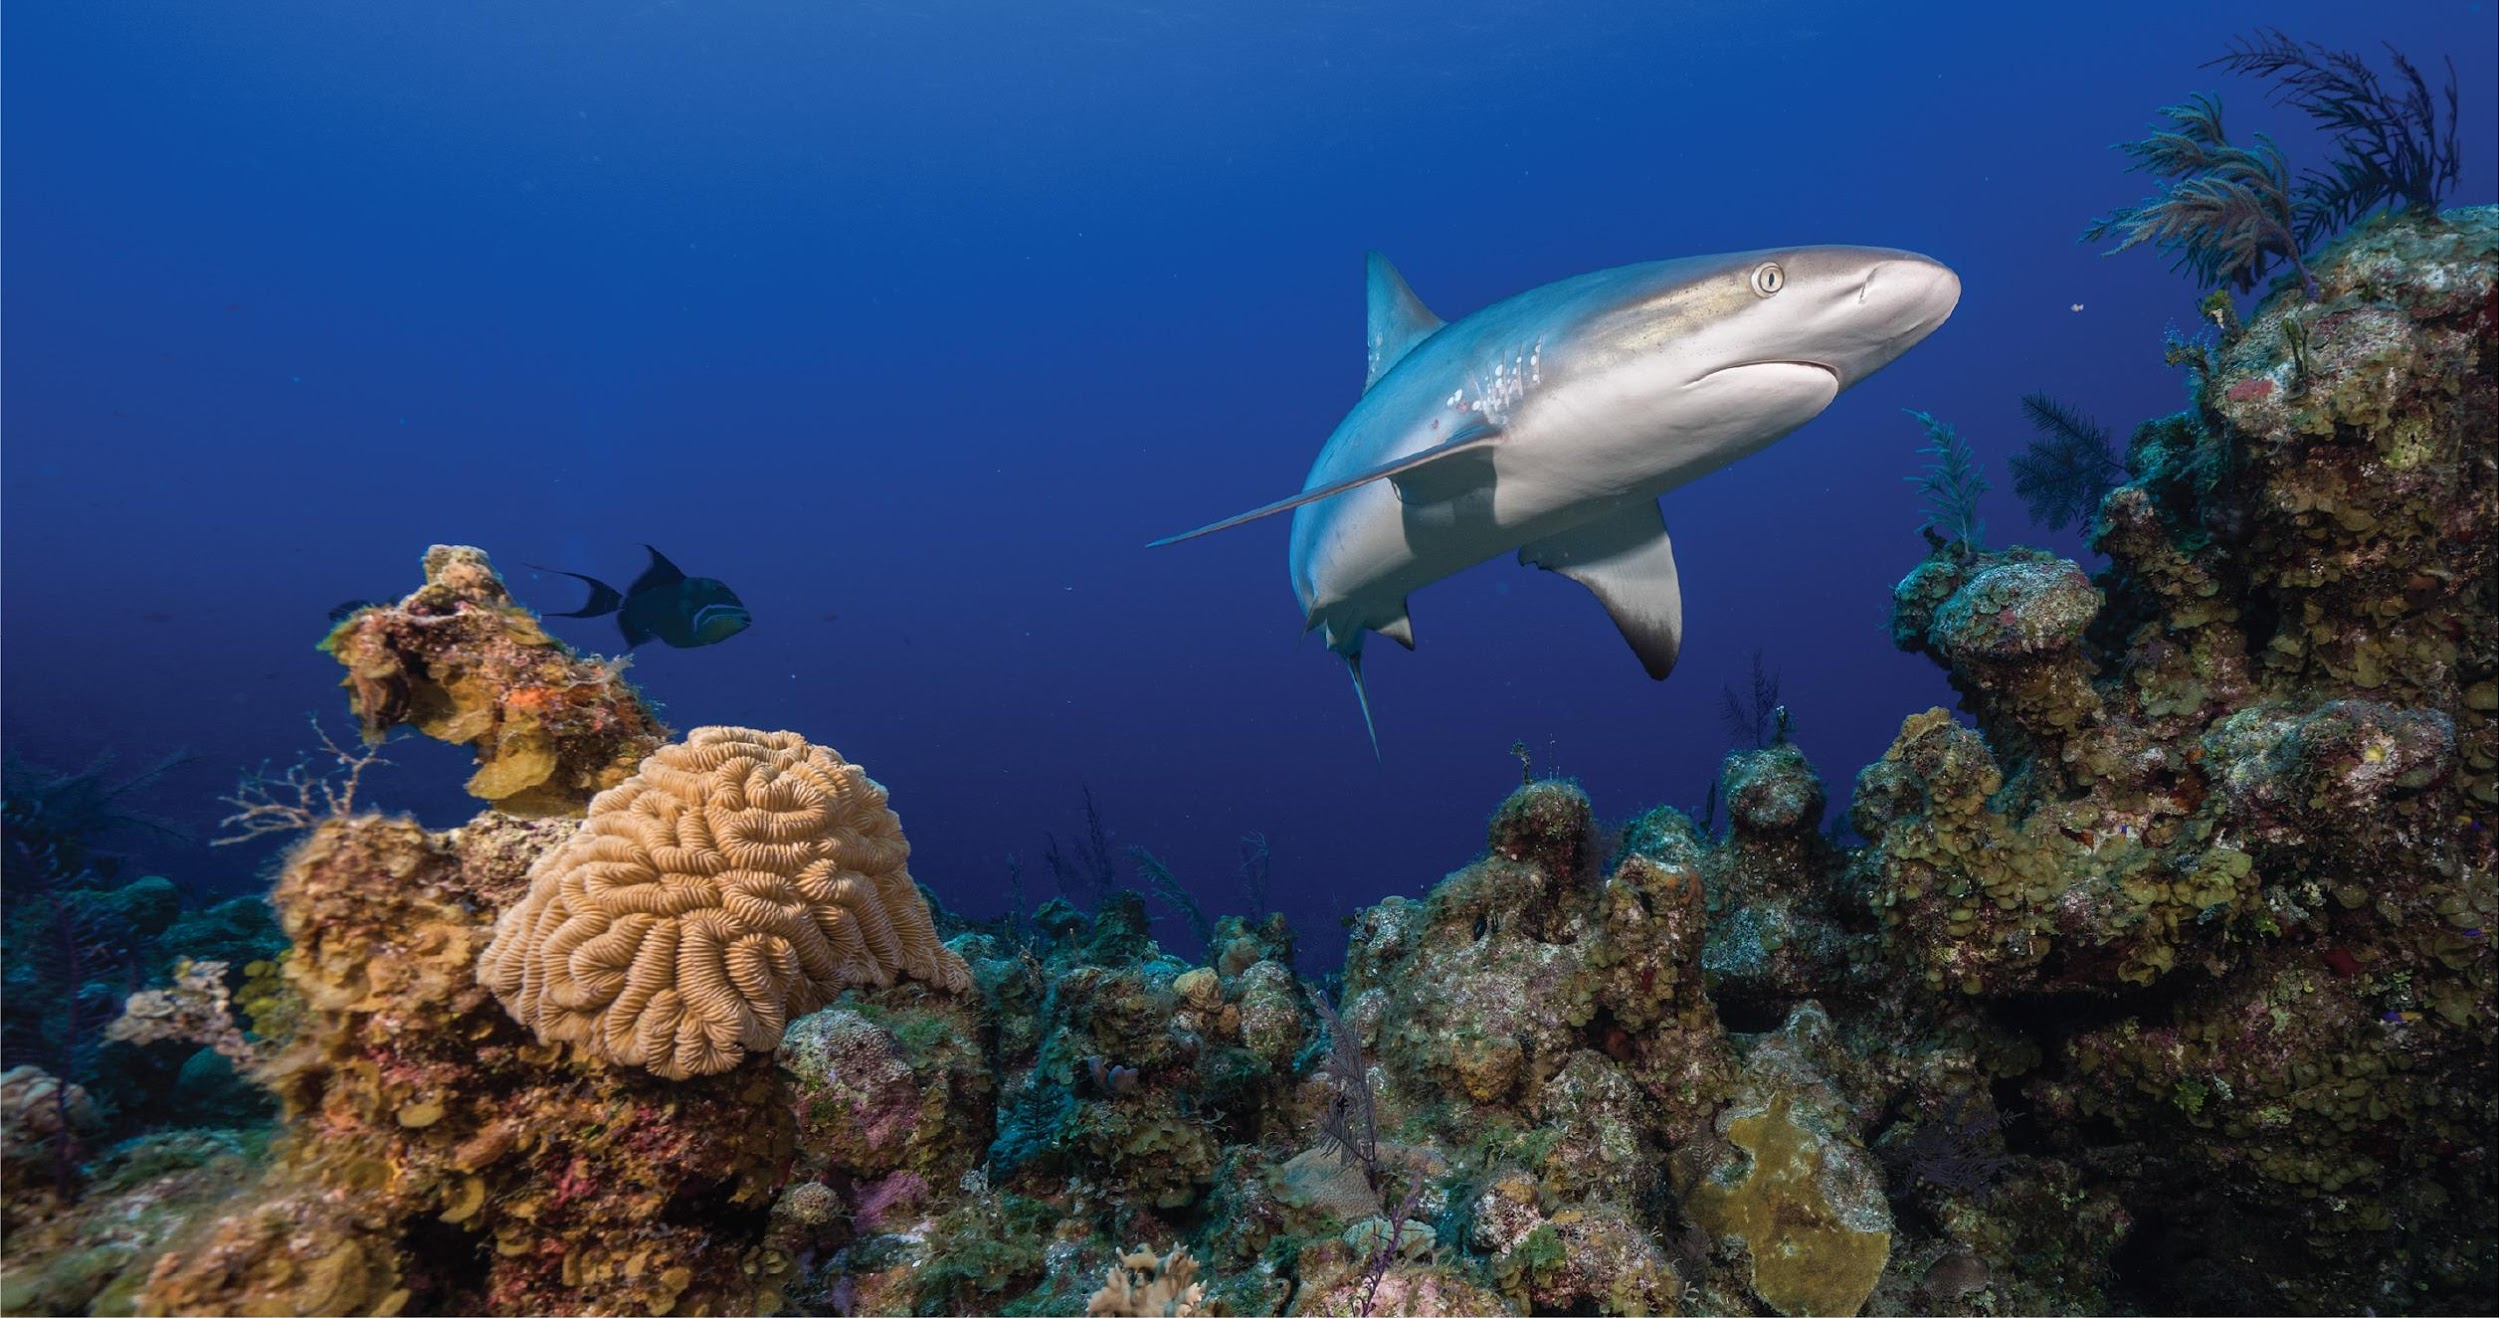 Карибская рифовая акула (Carcharhinus perezi), численность популяции которой находится под угрозой